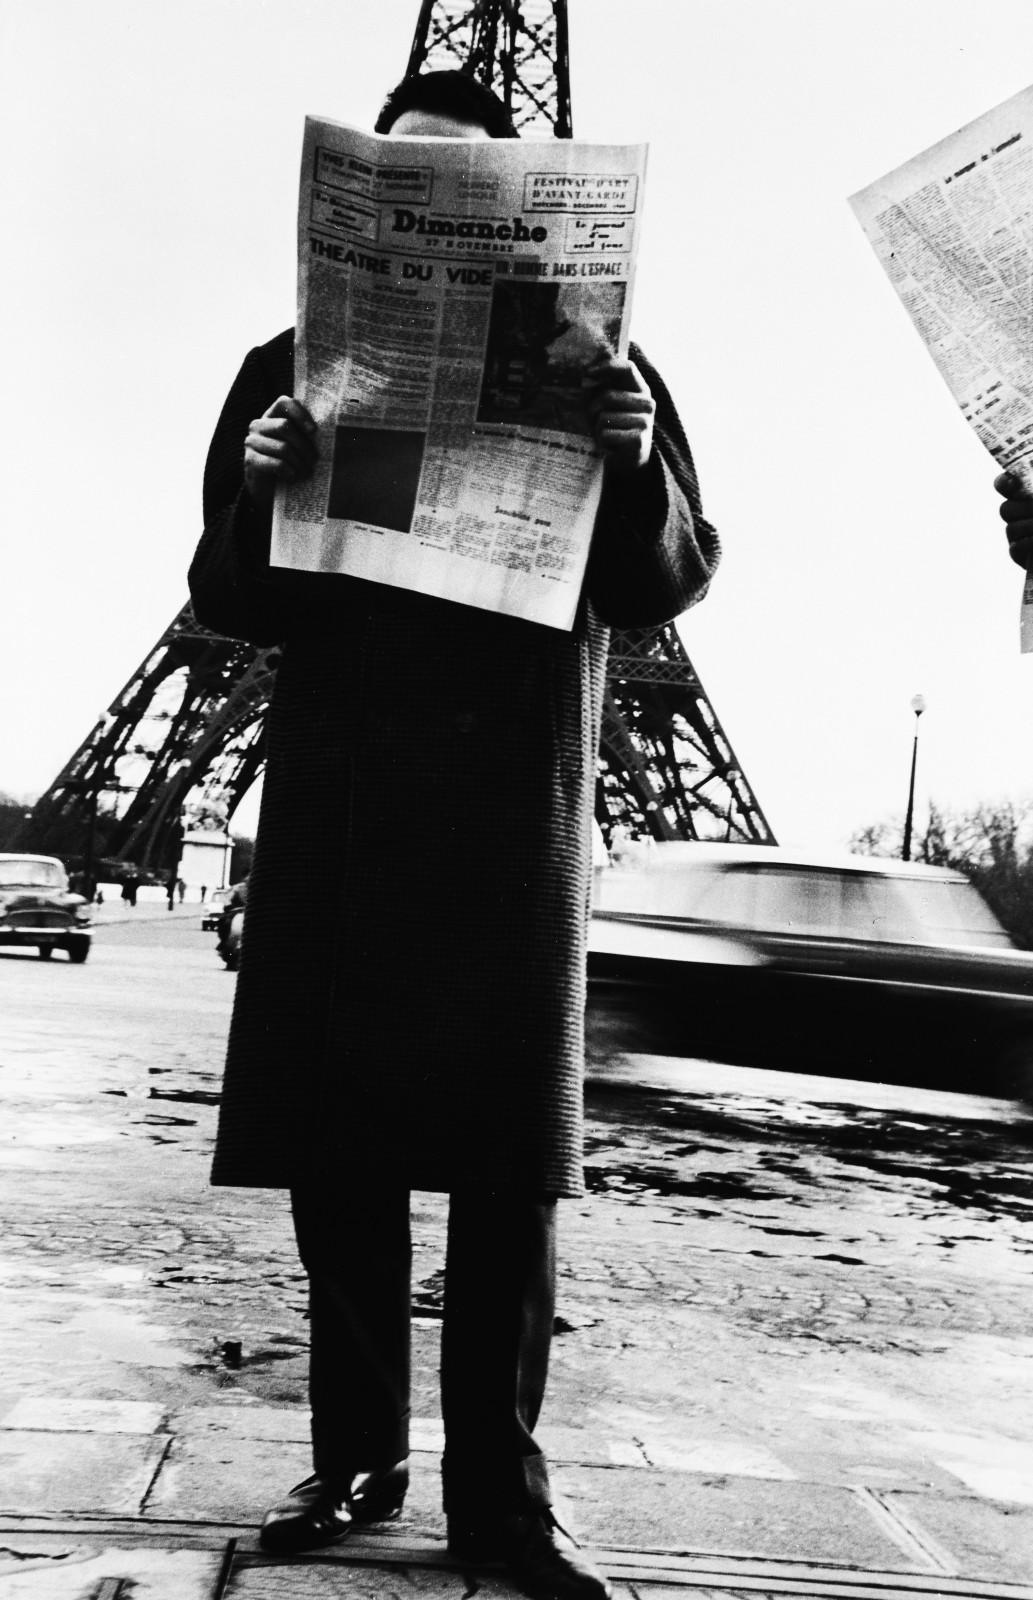 Publication of "Dimanche 27 novembre, le journal d'un seul jour", an artistic event by Yves Klein as part of the Festival d'Art d'Avant-Garde (Avant-Garde Art Festival).